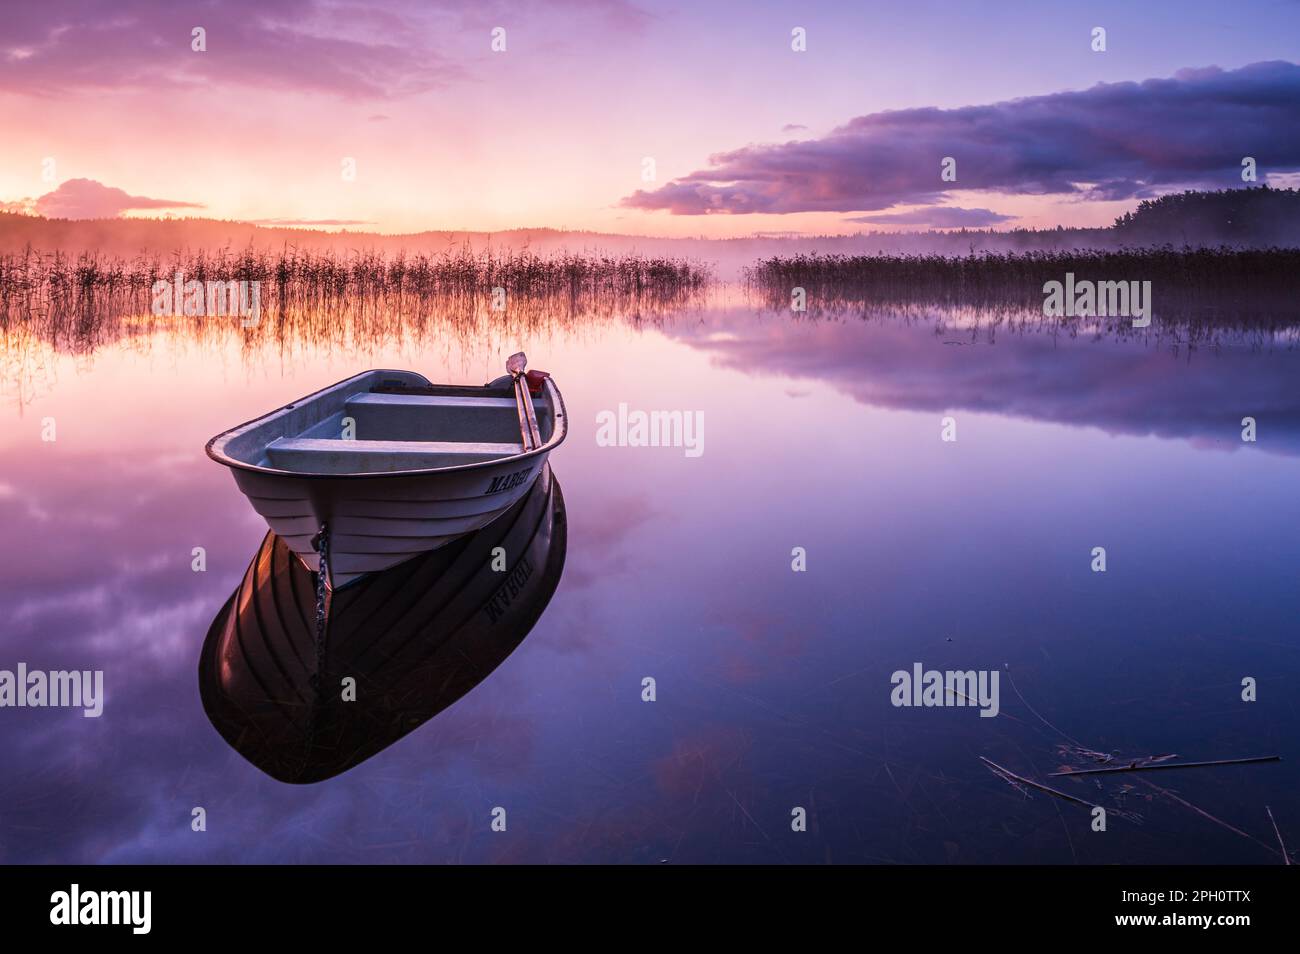 Eine ruhige Morgendämmerung mit einem Ruderboot, das von der ruhigen Oberfläche der Seen reflektiert, umgeben von Schönheit der Natur und einem rosa Himmel. Stockfoto